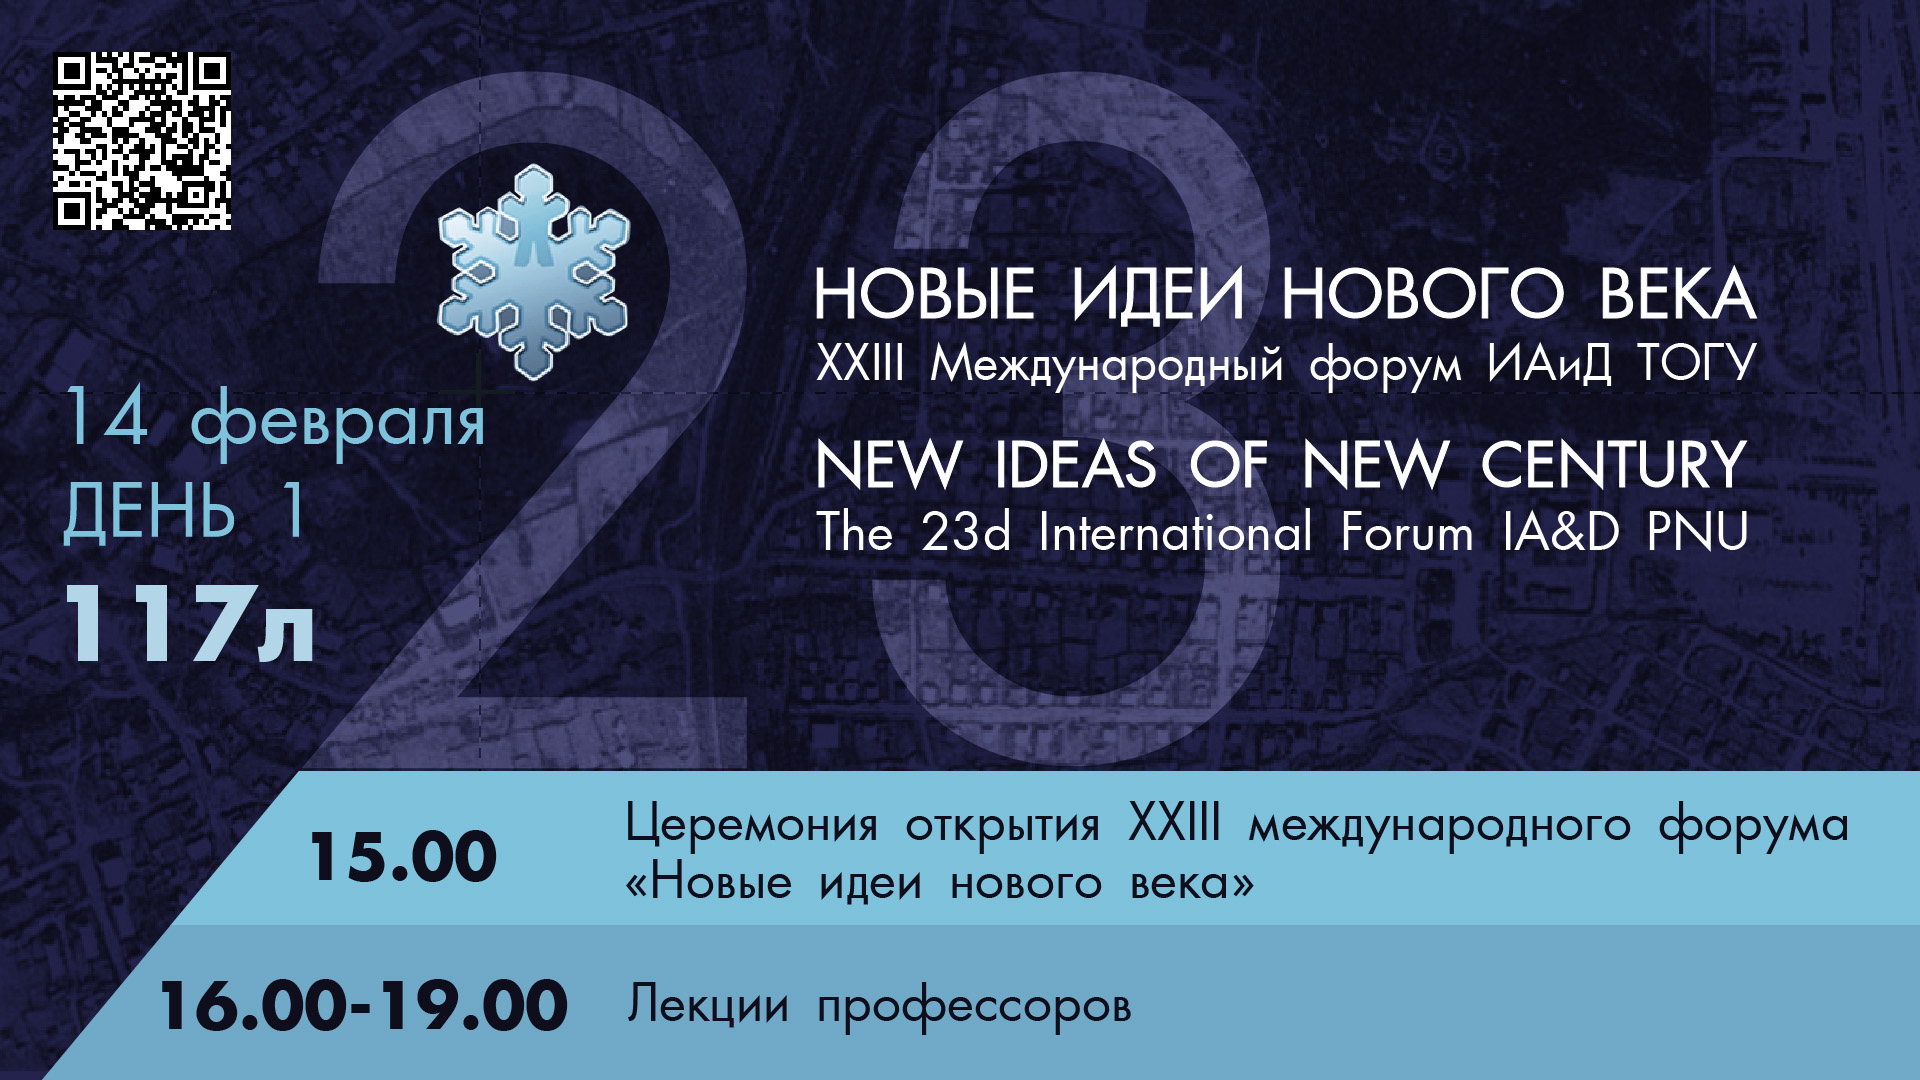 XXIII Международный форум "Новые идеи нового века" 1 день